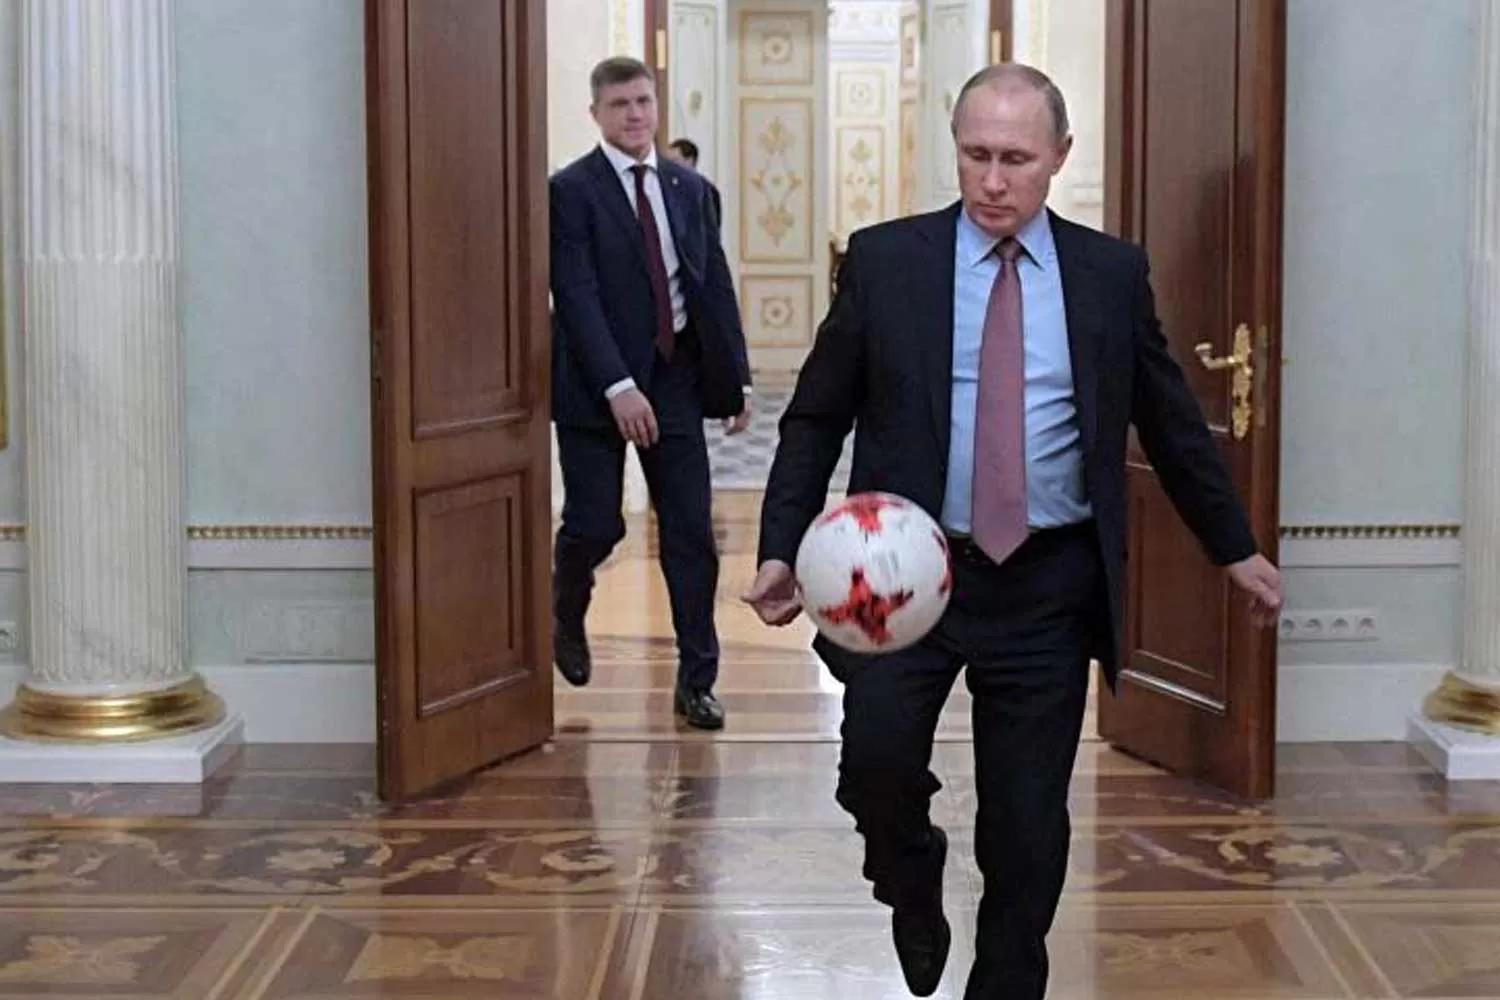 FANÁTICO. El presidente ruso Vladimir Putin hizo jueguitos con la pelota para promocionar el Mundial que arranca el 14 de junio en su país. (EL CIUDADANO)